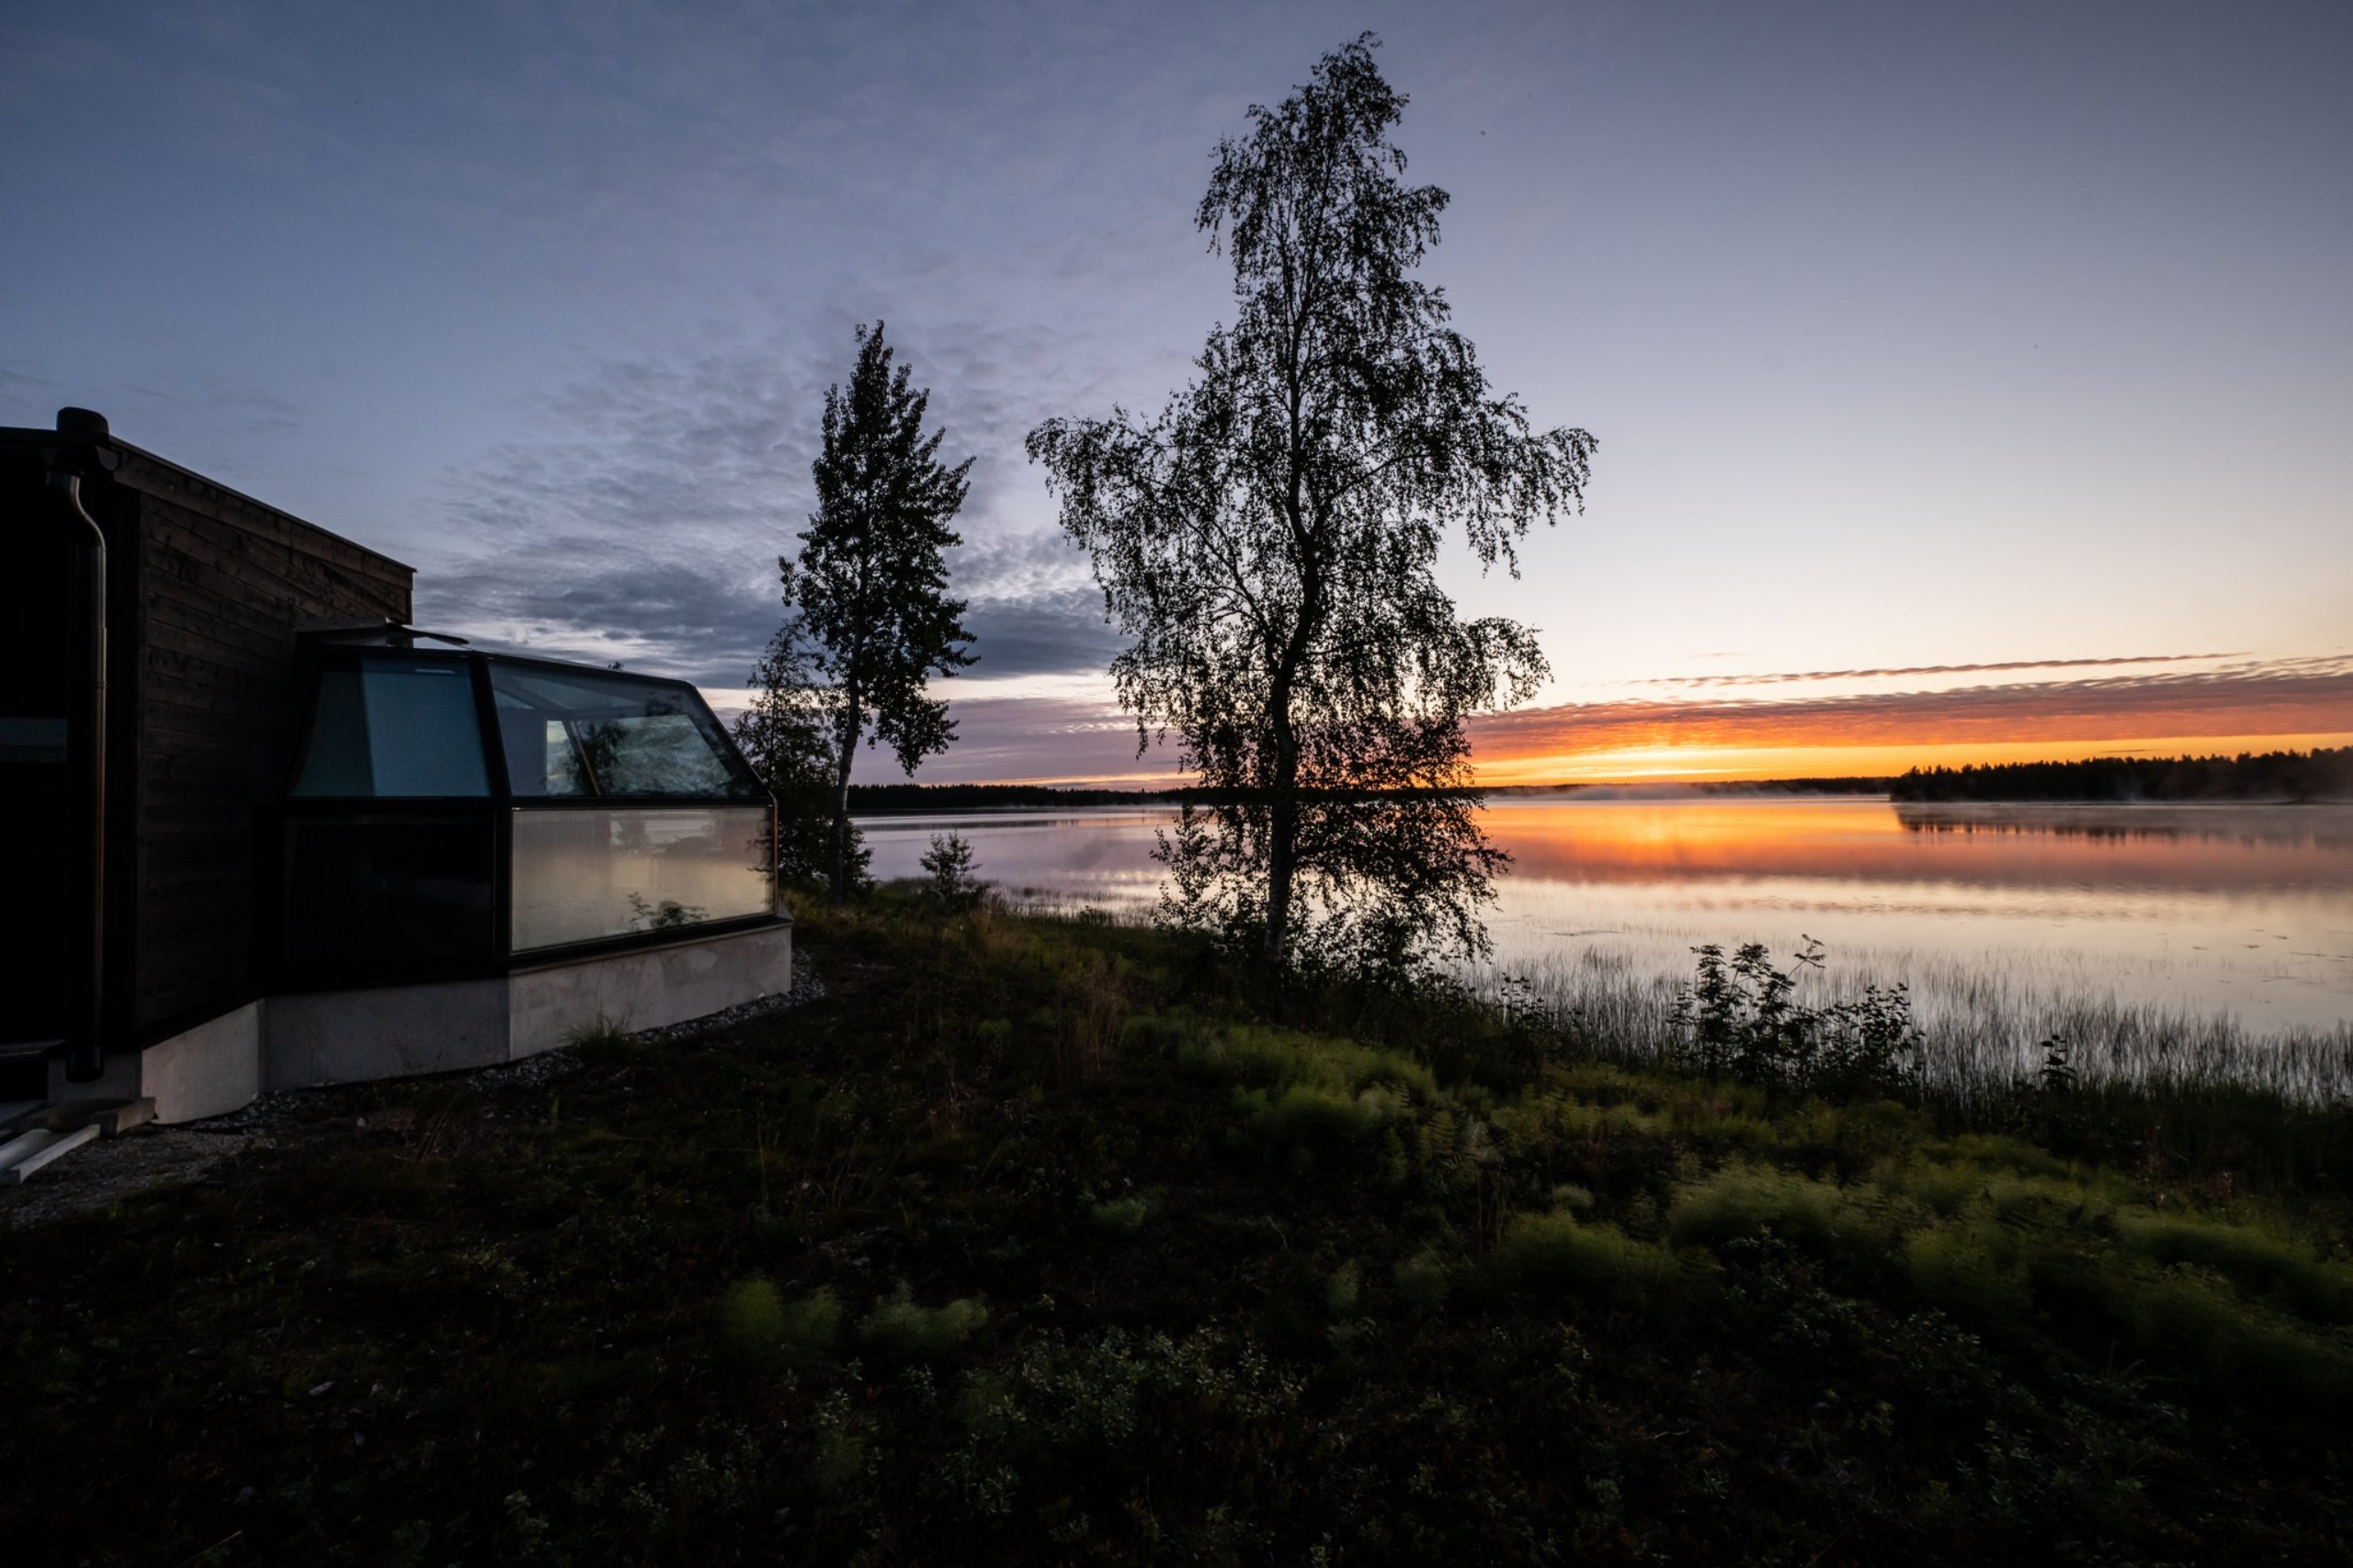  Finland kallas de tusentals sjöarnas land - och en av dem finns vid Camping Wildlife Park.